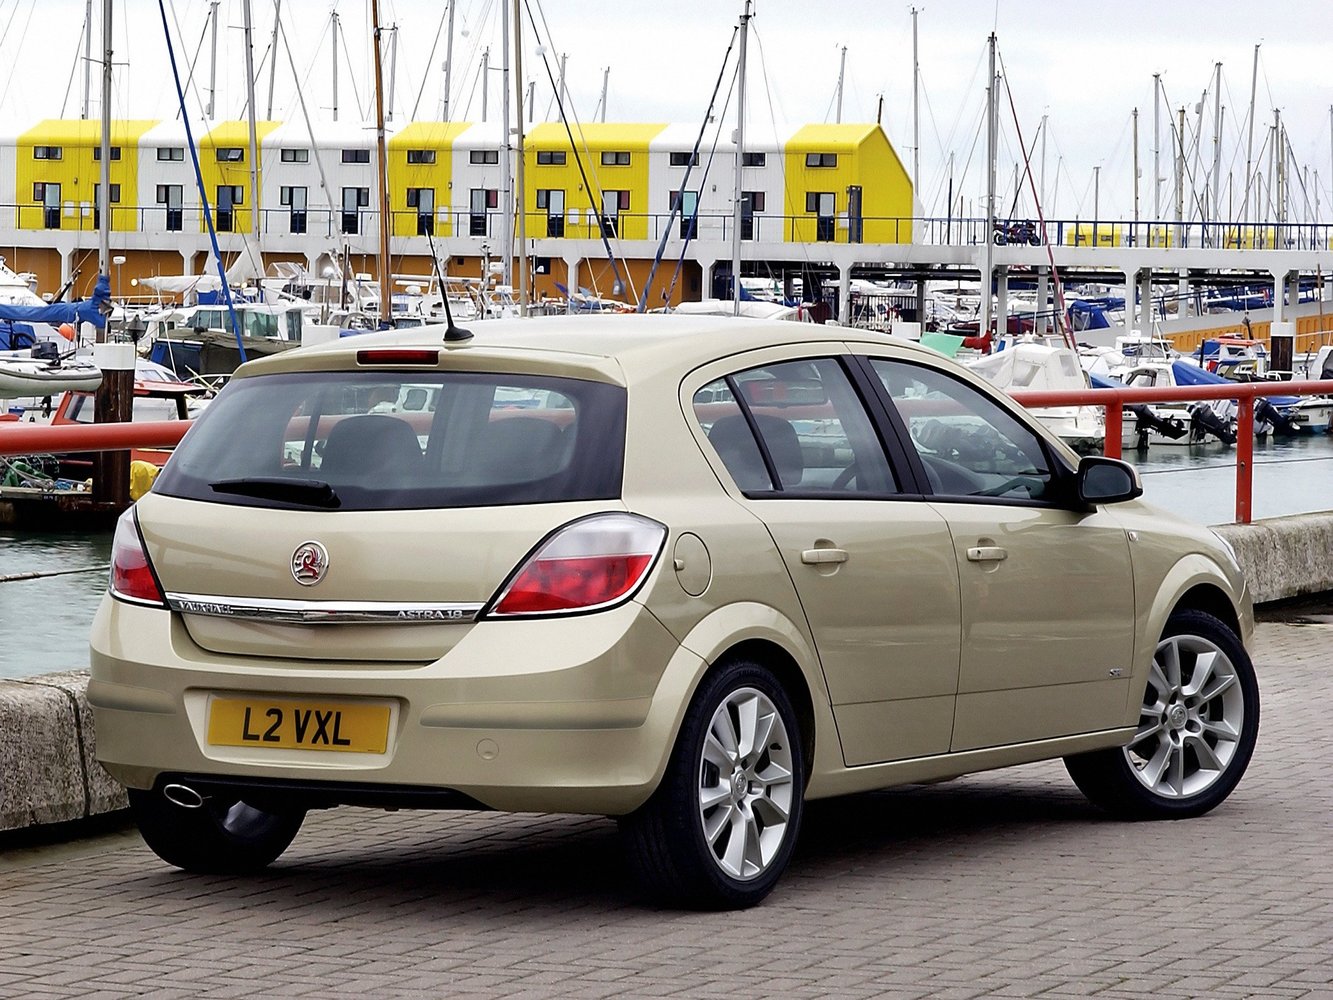 хэтчбек 5 дв. Vauxhall Astra 2004 - 2010г выпуска модификация 1.6 MT (105 л.с.)